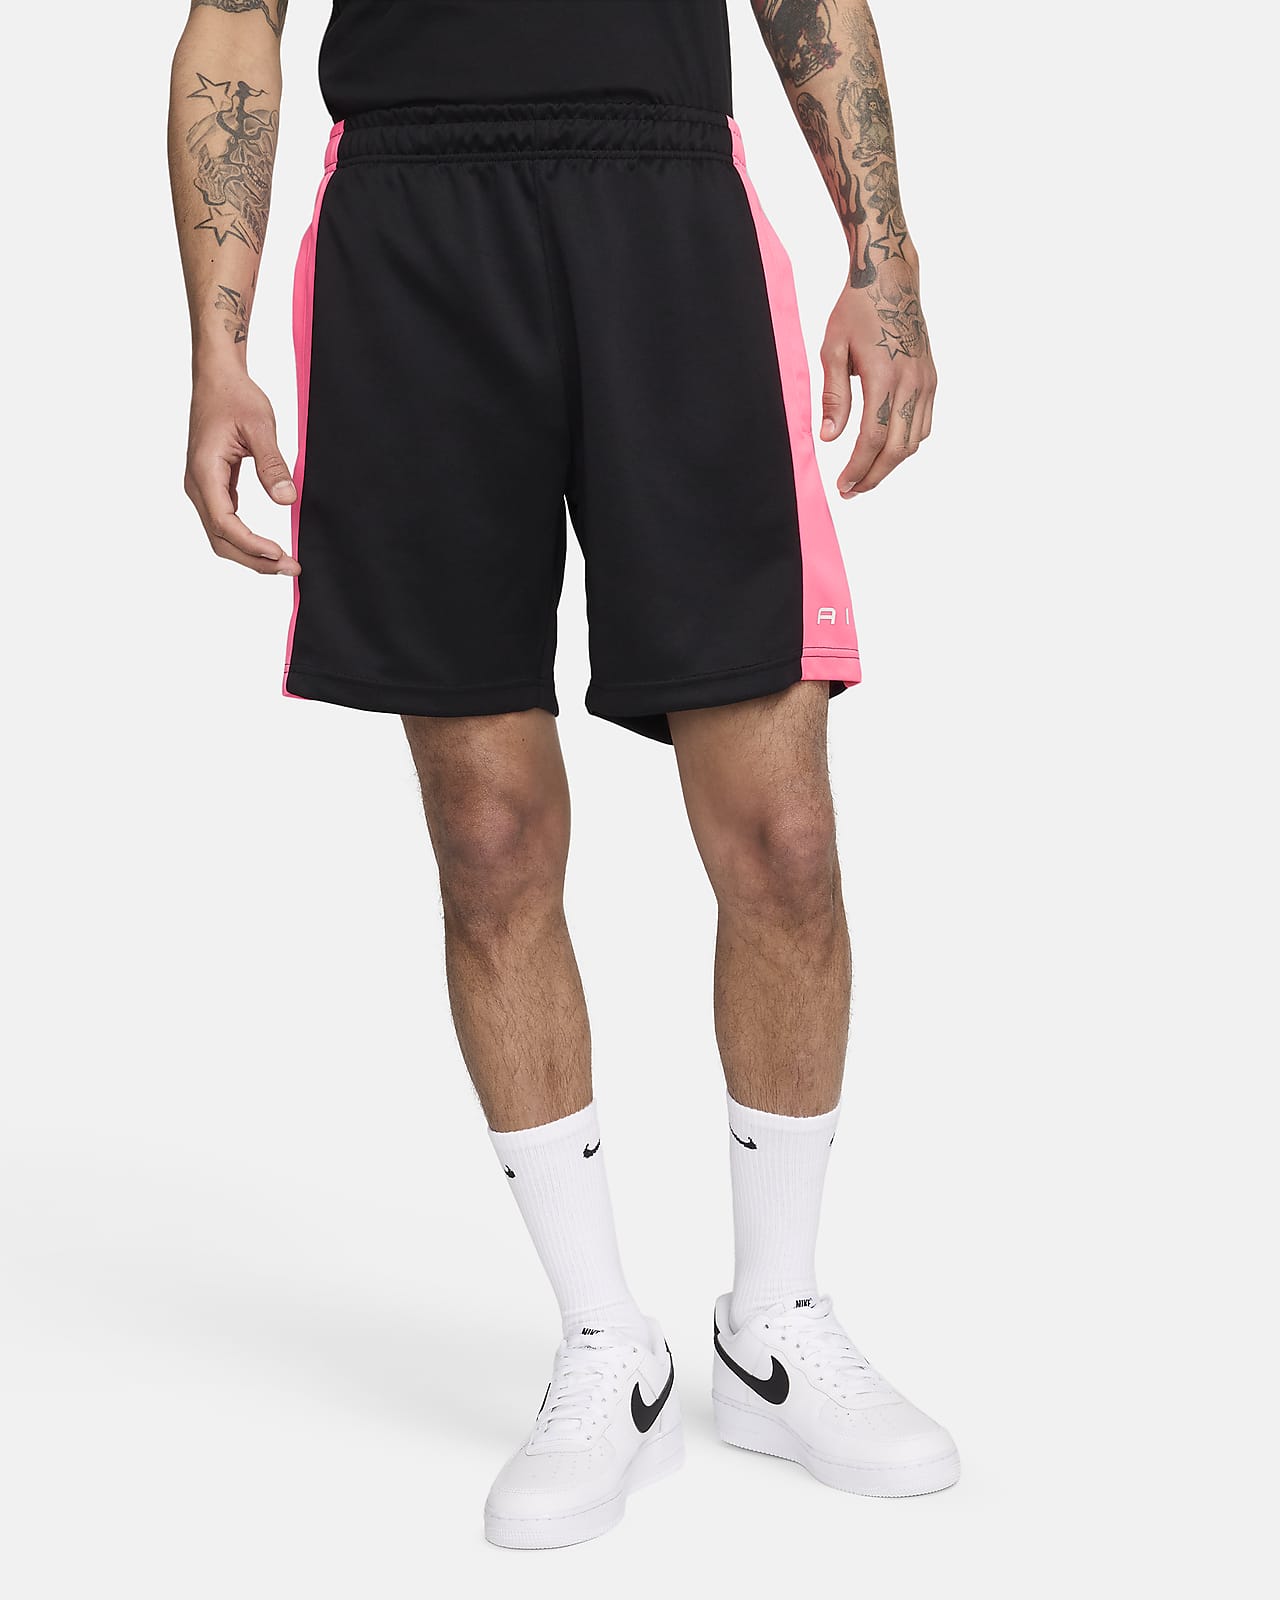 Nike Air Pantalón corto - Hombre